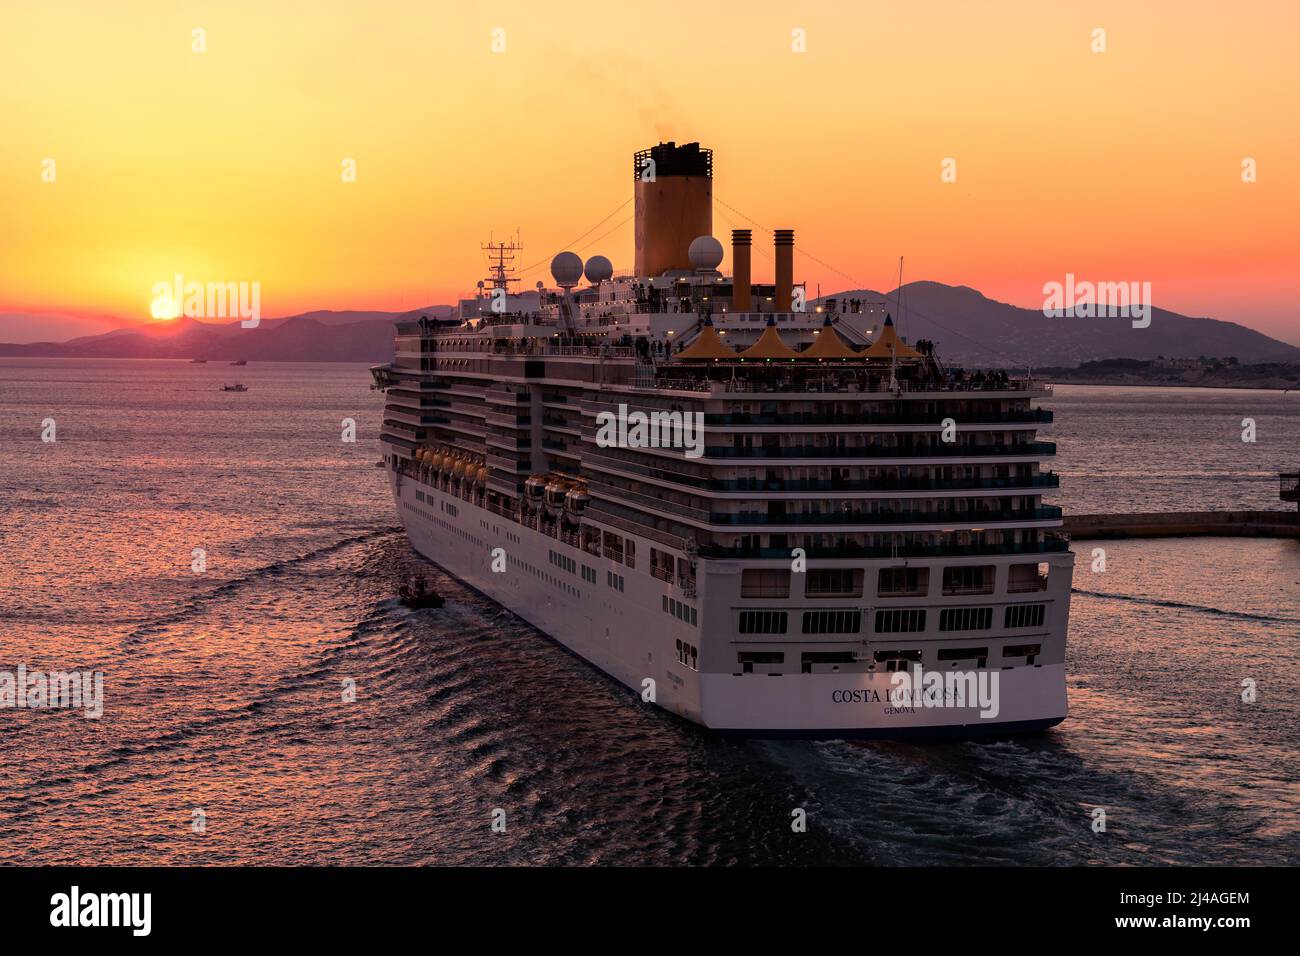 La Costa Crociere nave da crociera Costa luminosa vela al tramonto dal  Porto del Pireo - Novembre 2018 Foto stock - Alamy